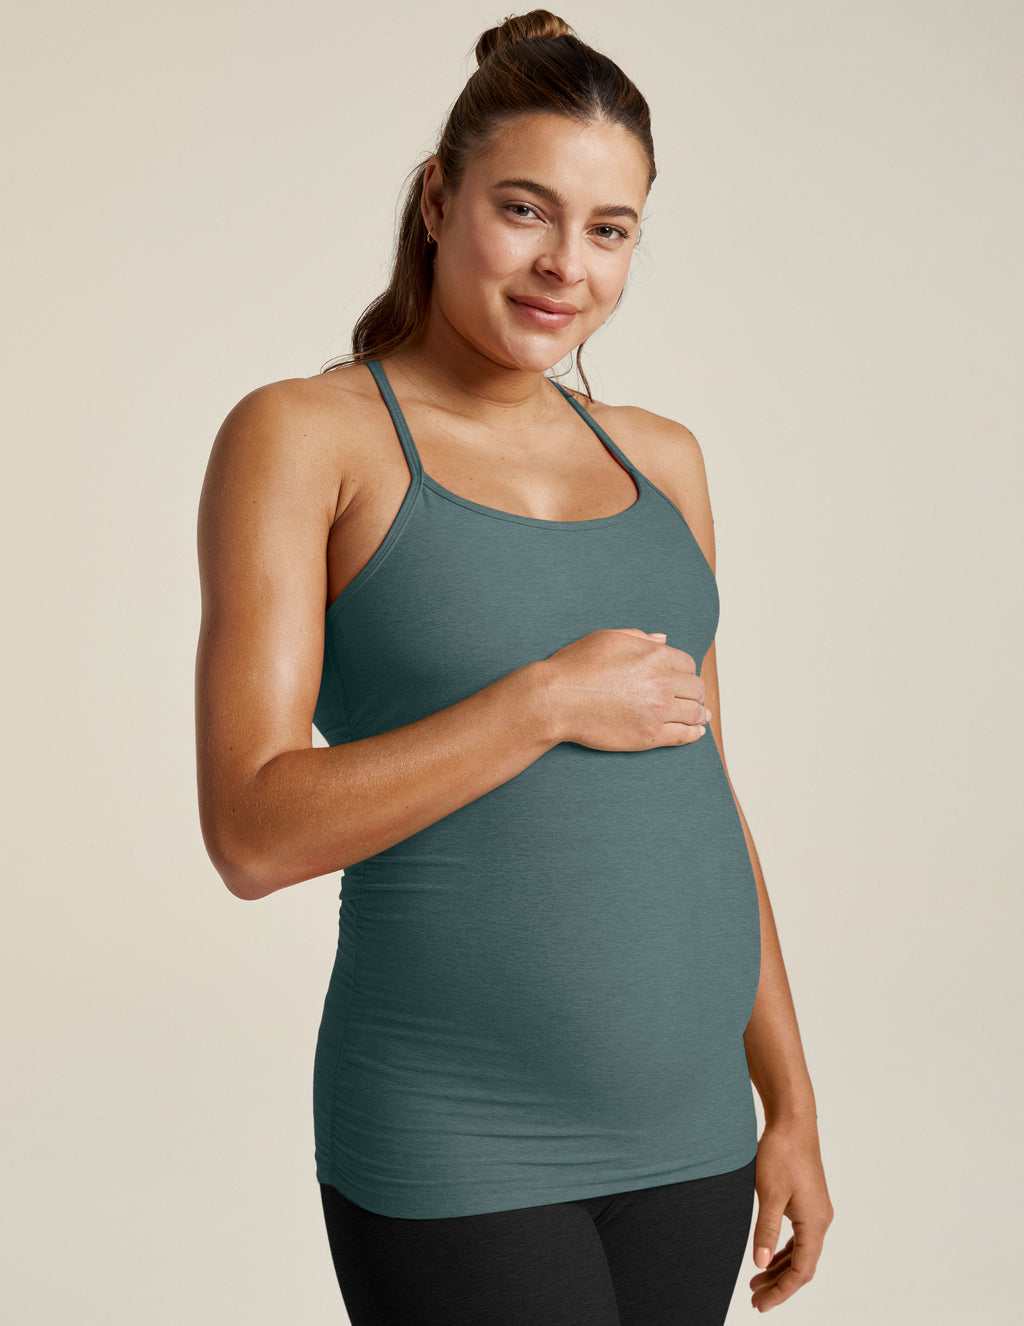 Maternity Clothing